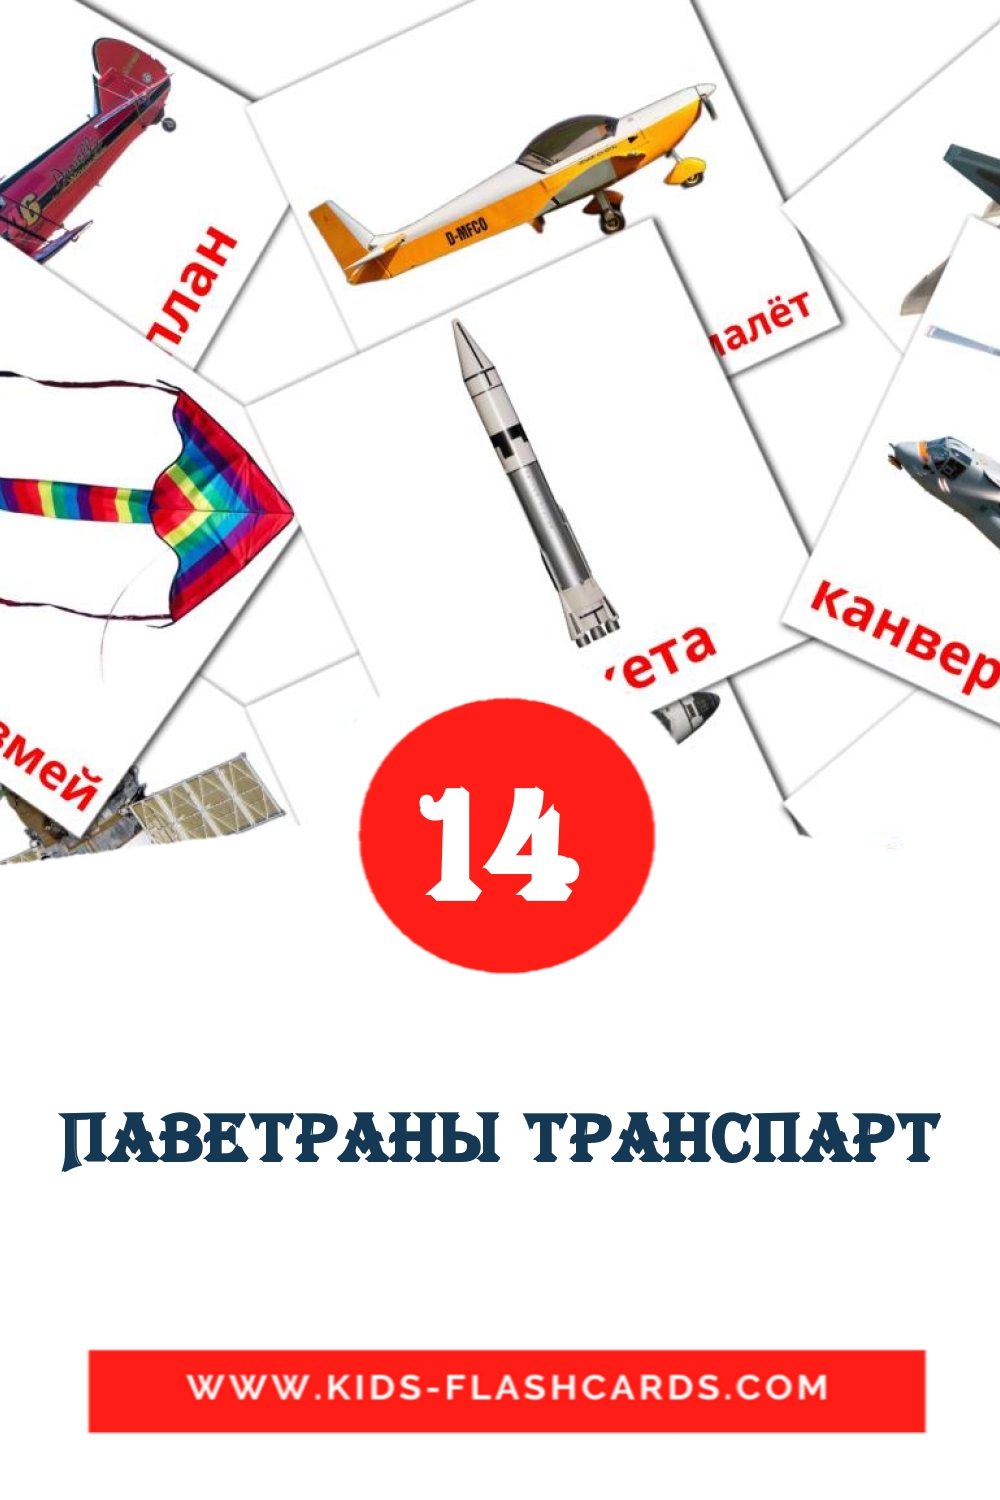 14 cartes illustrées de Паветраны транспарт pour la maternelle en biélorusse